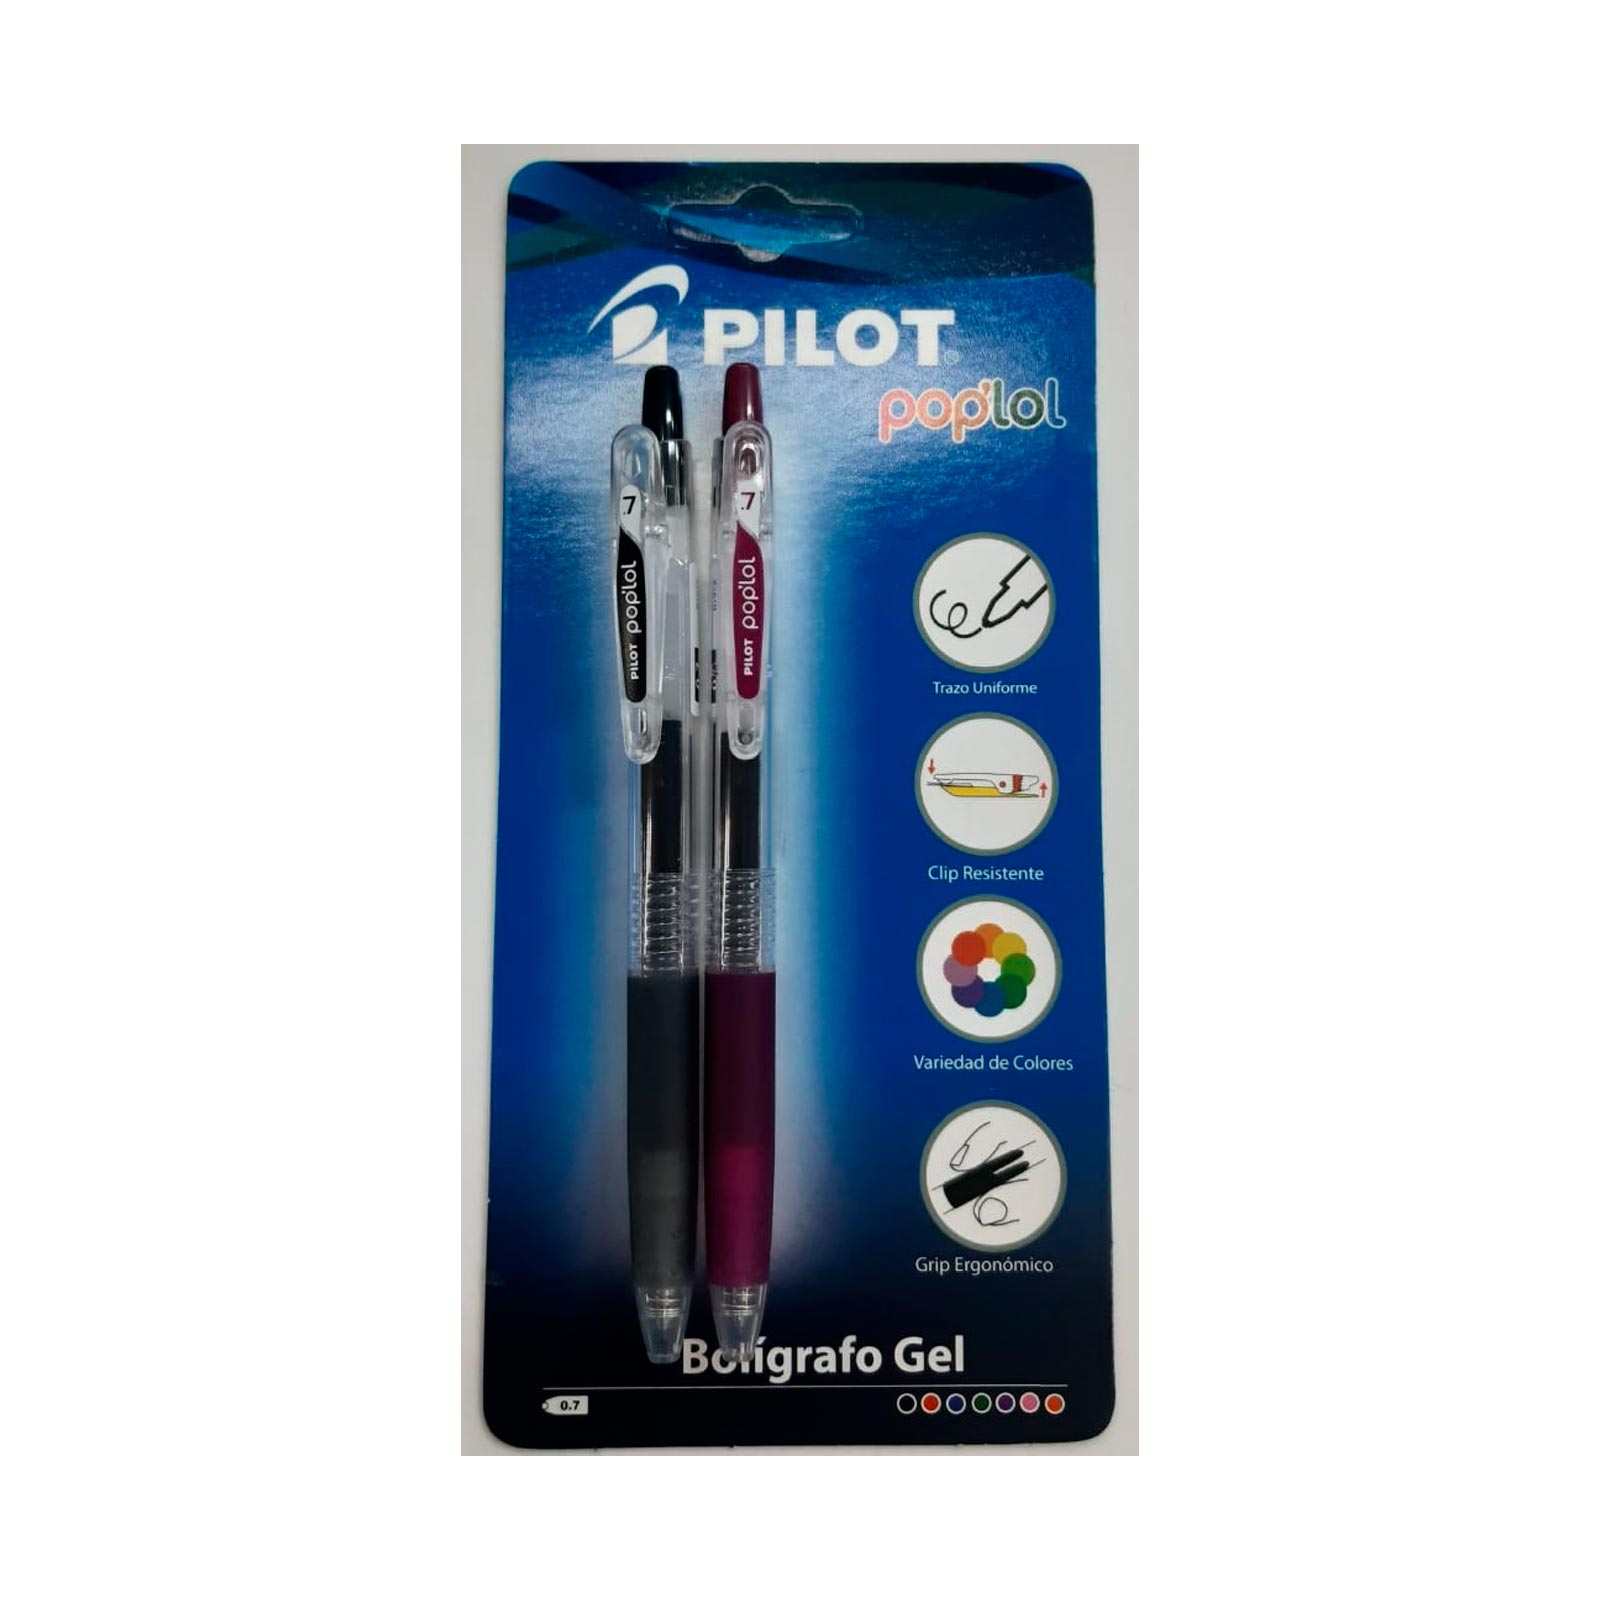 Bolígrafo Pilot Pop'lol x 2 unidades, color negro